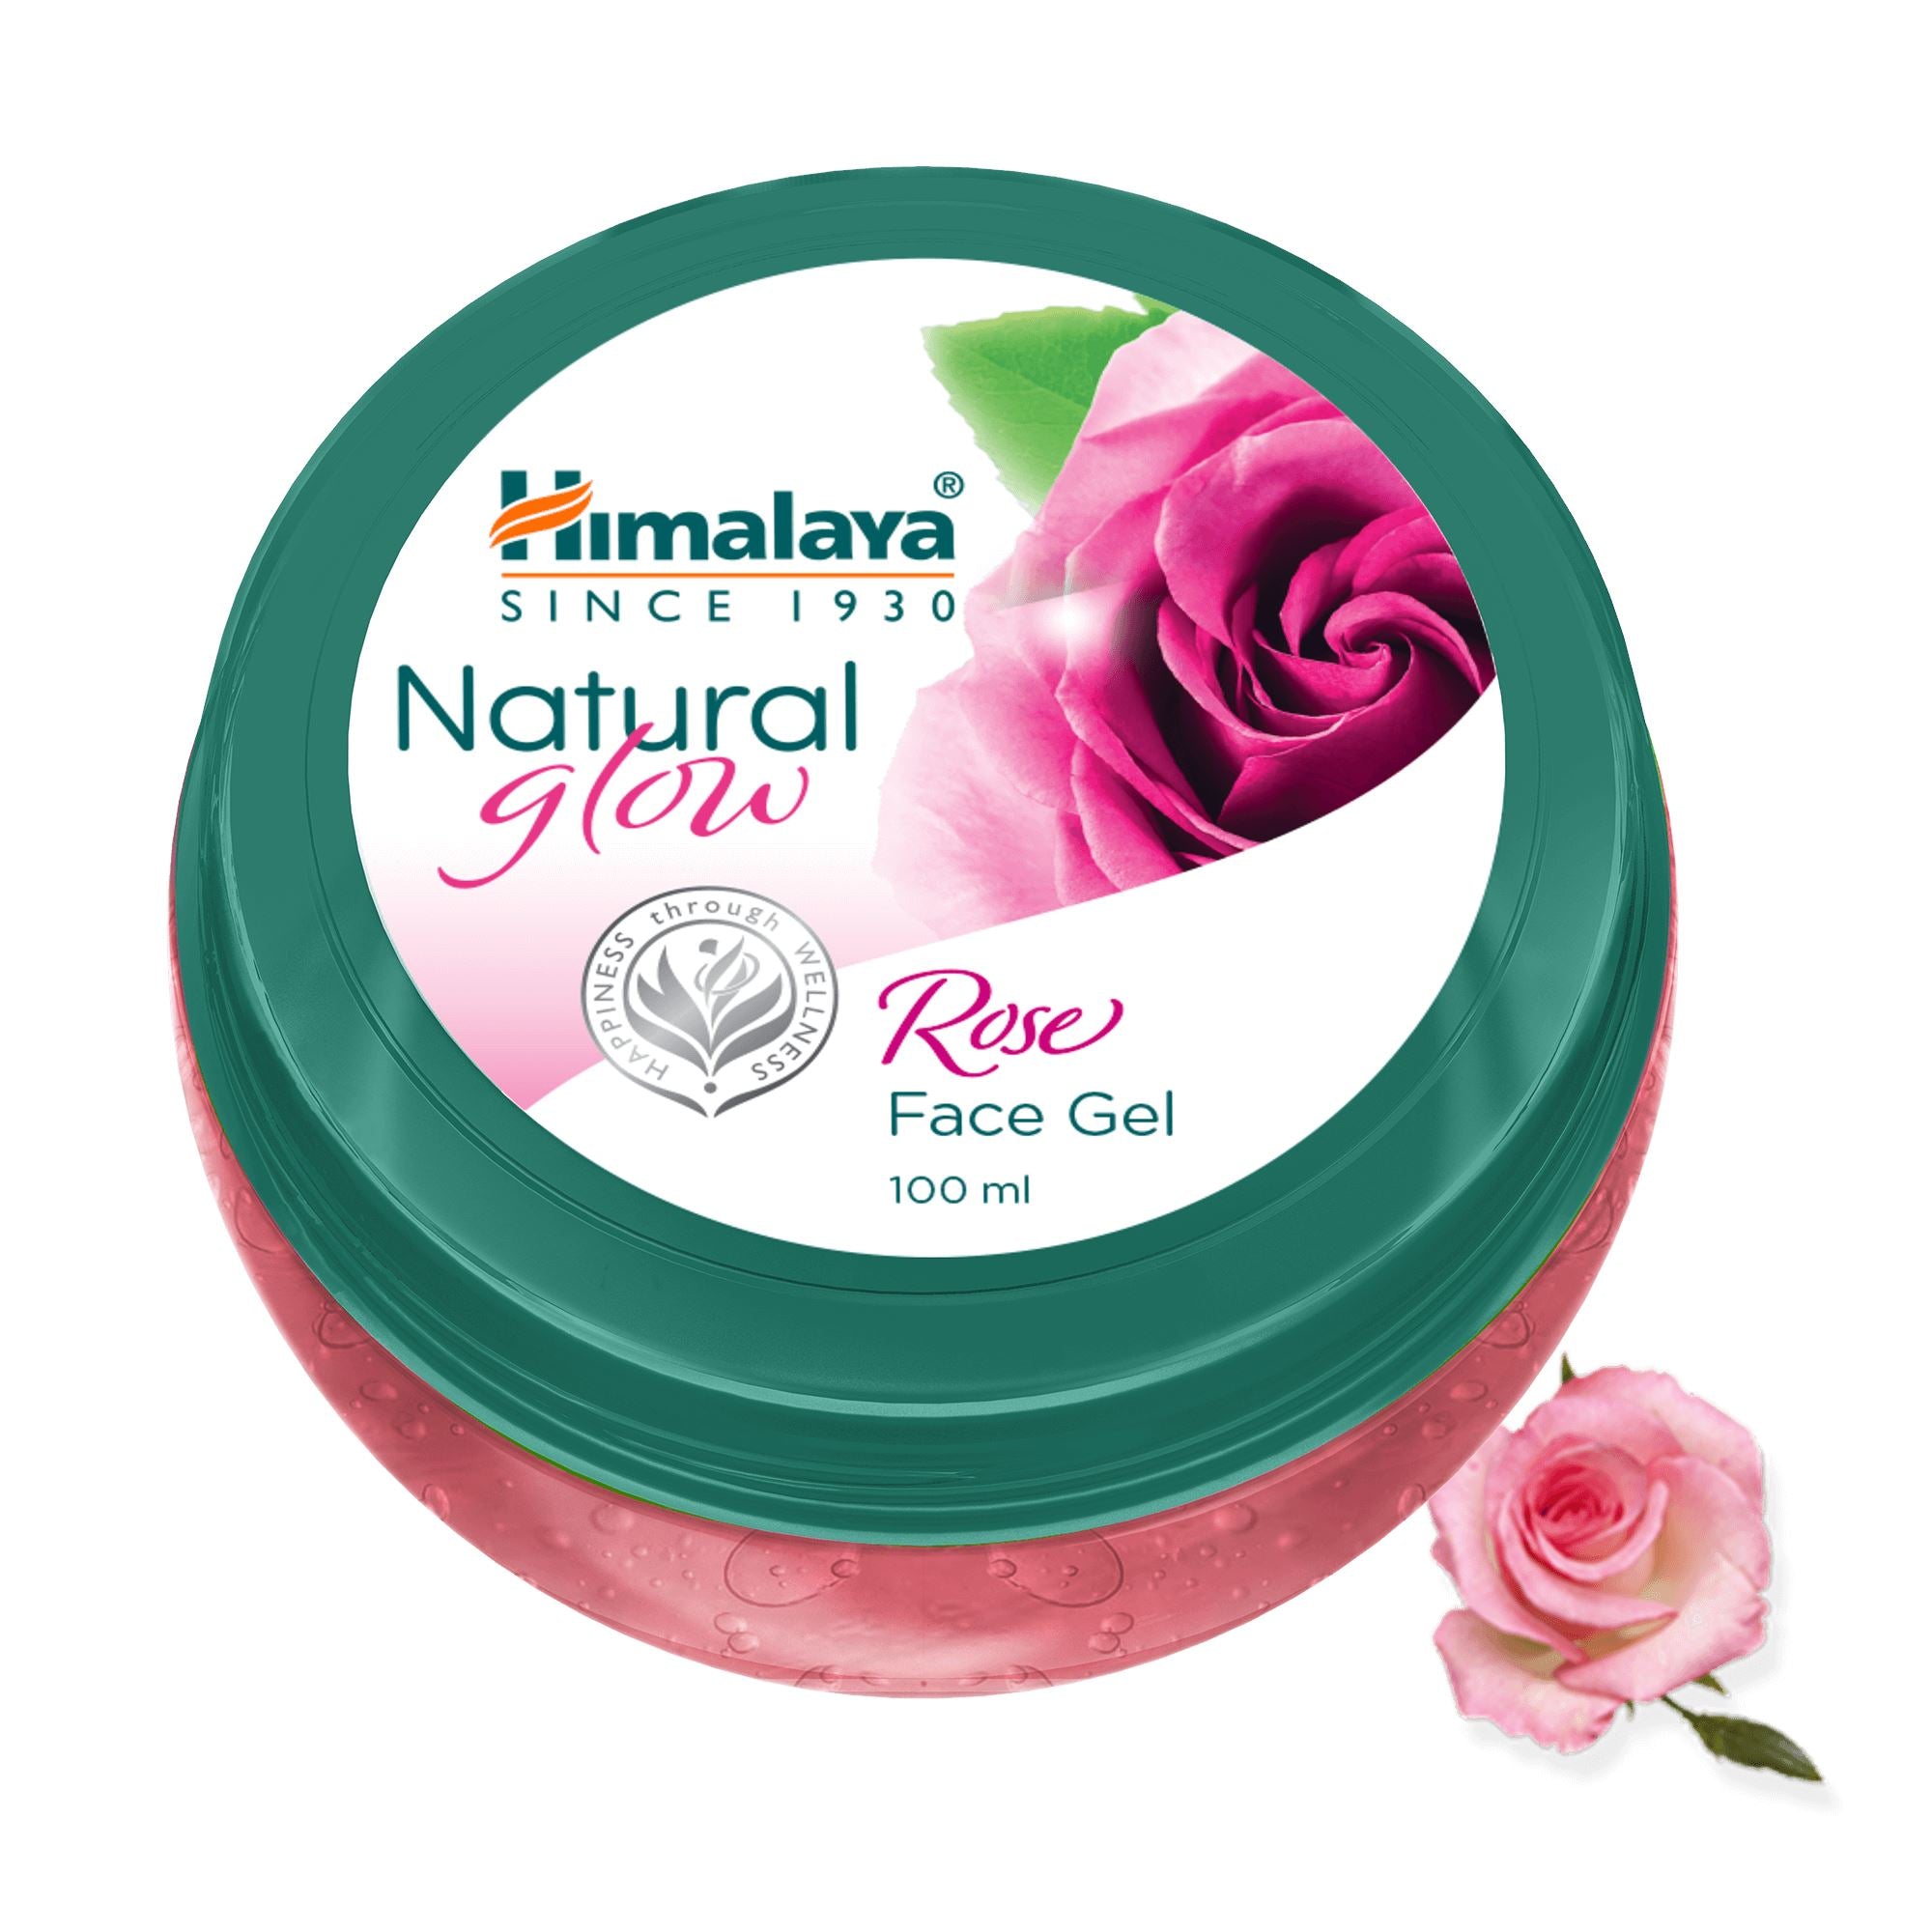 Himalaya Natural Glow Rose Face Gel 100ml - Revitalizes Dull Skin